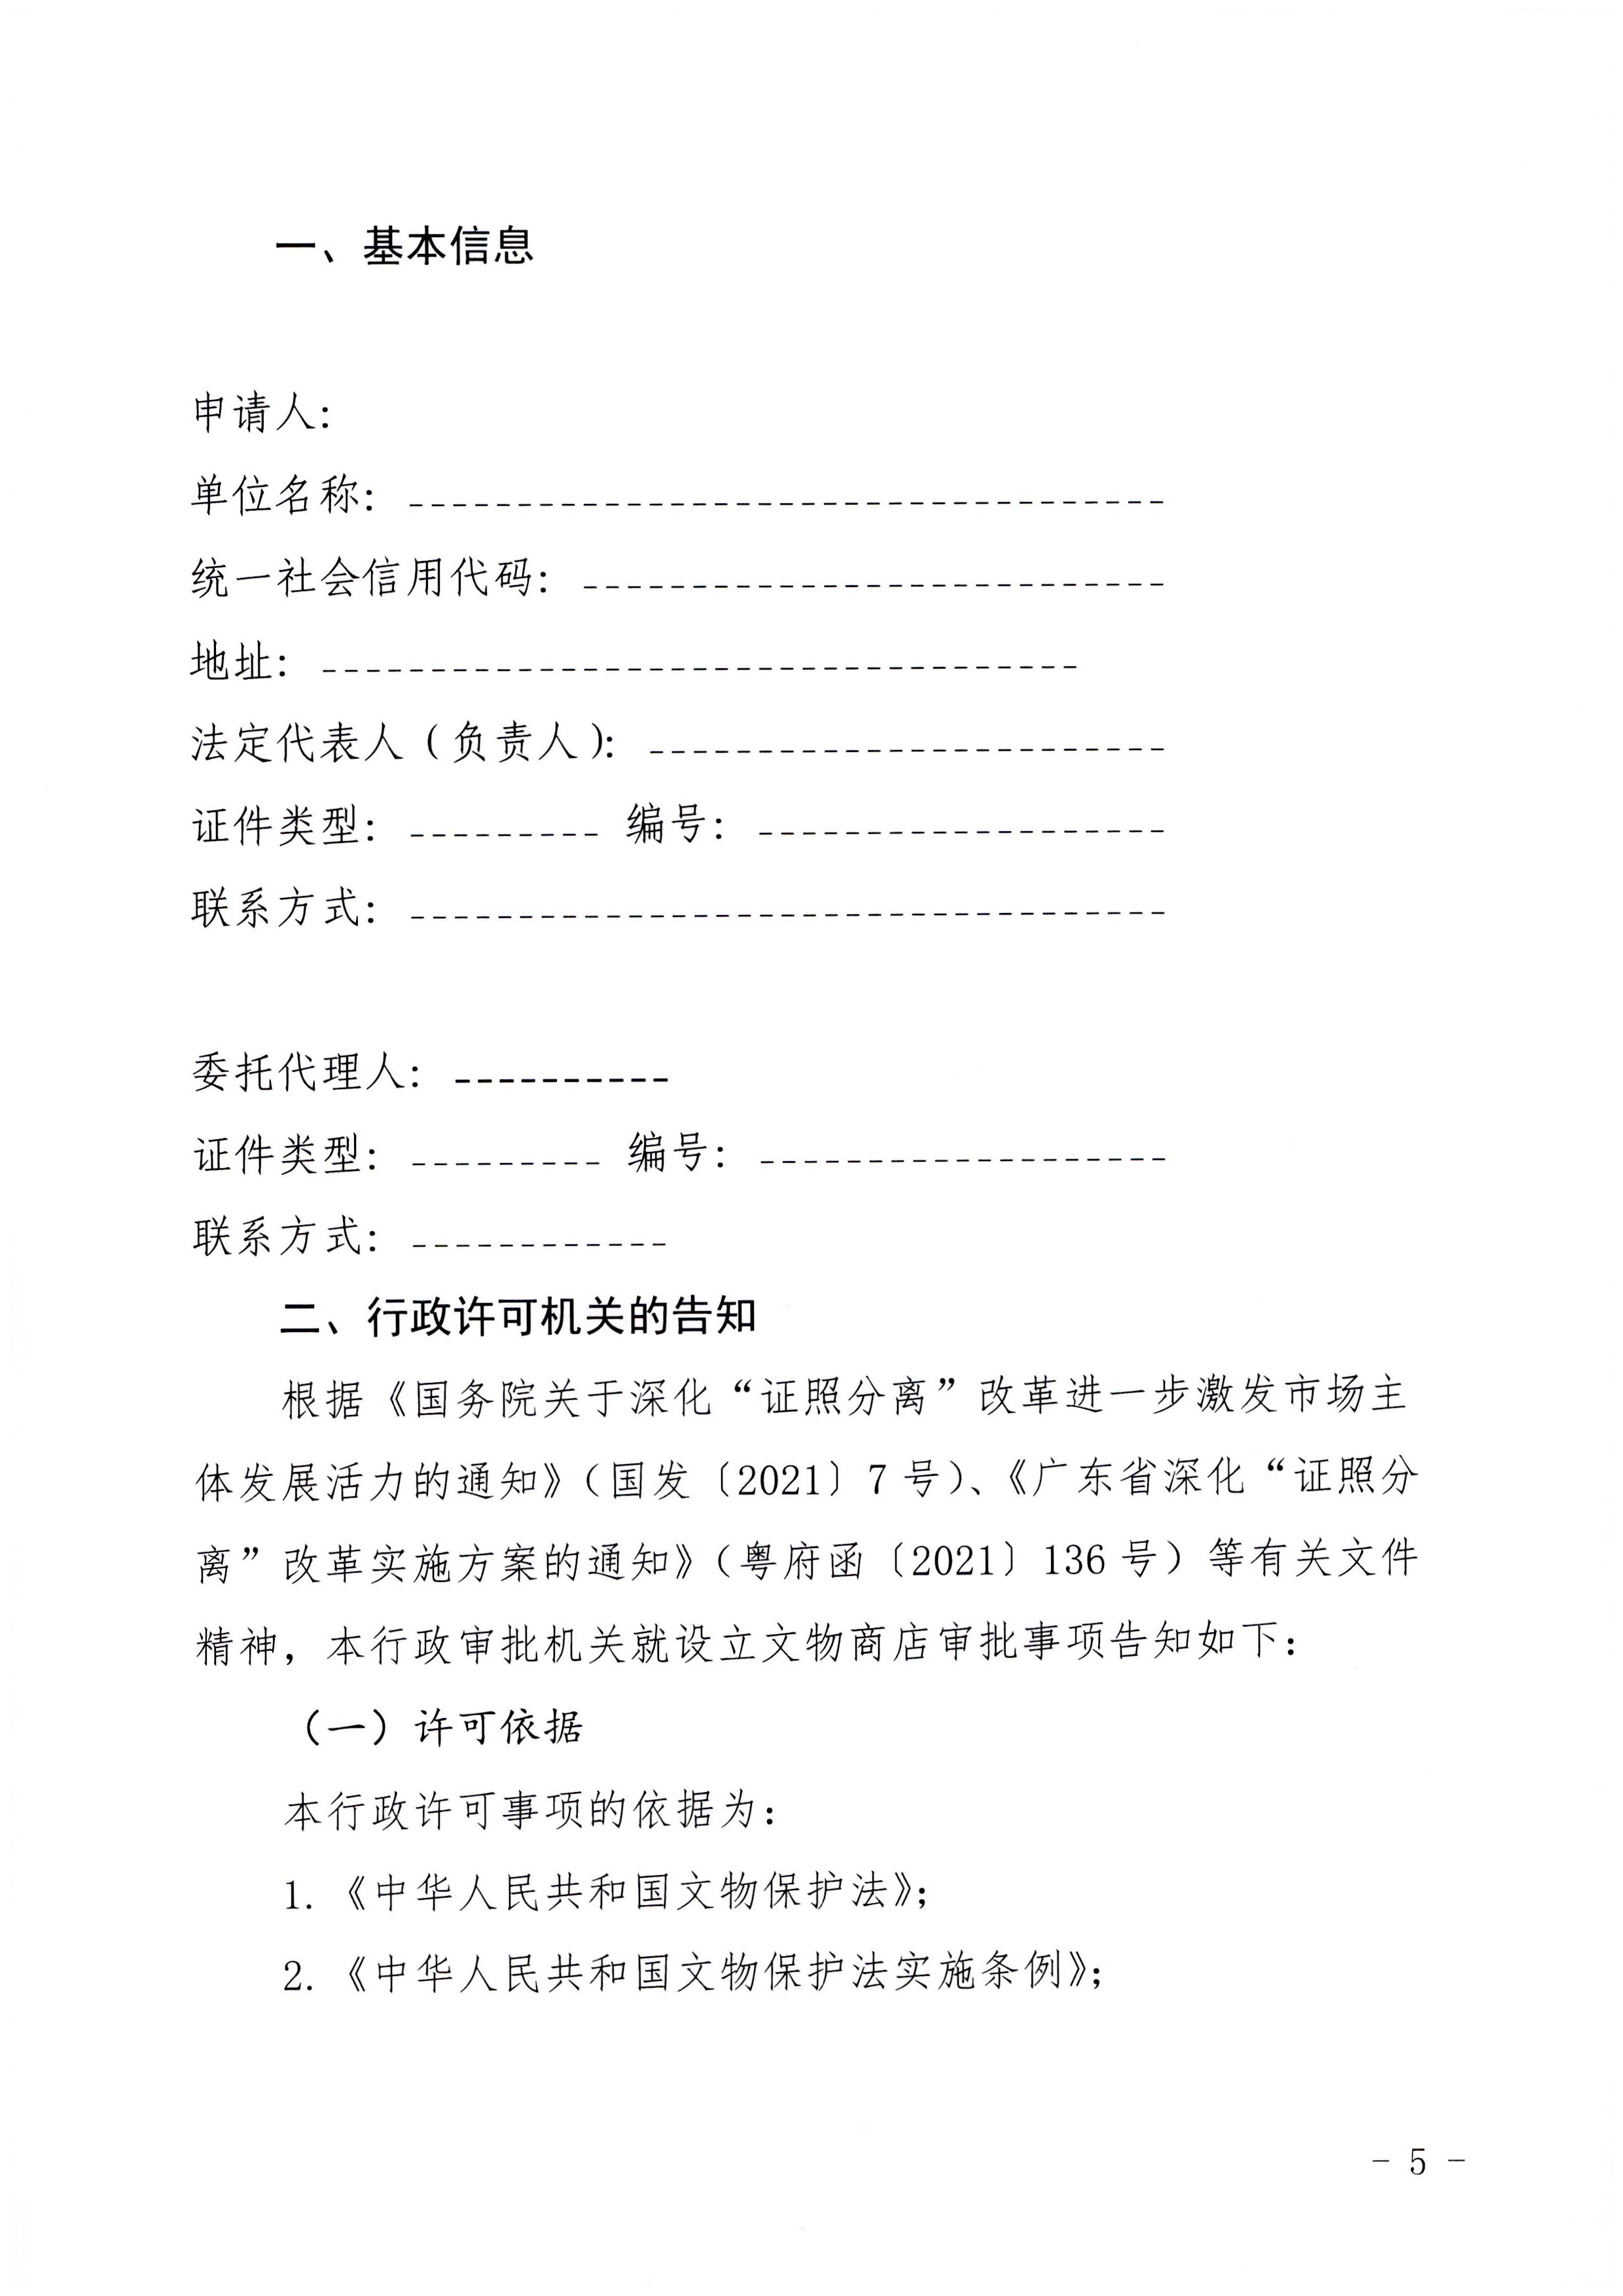 广东省文化和旅游厅印发证照分离改革实施方案的通知_页面_51.jpg